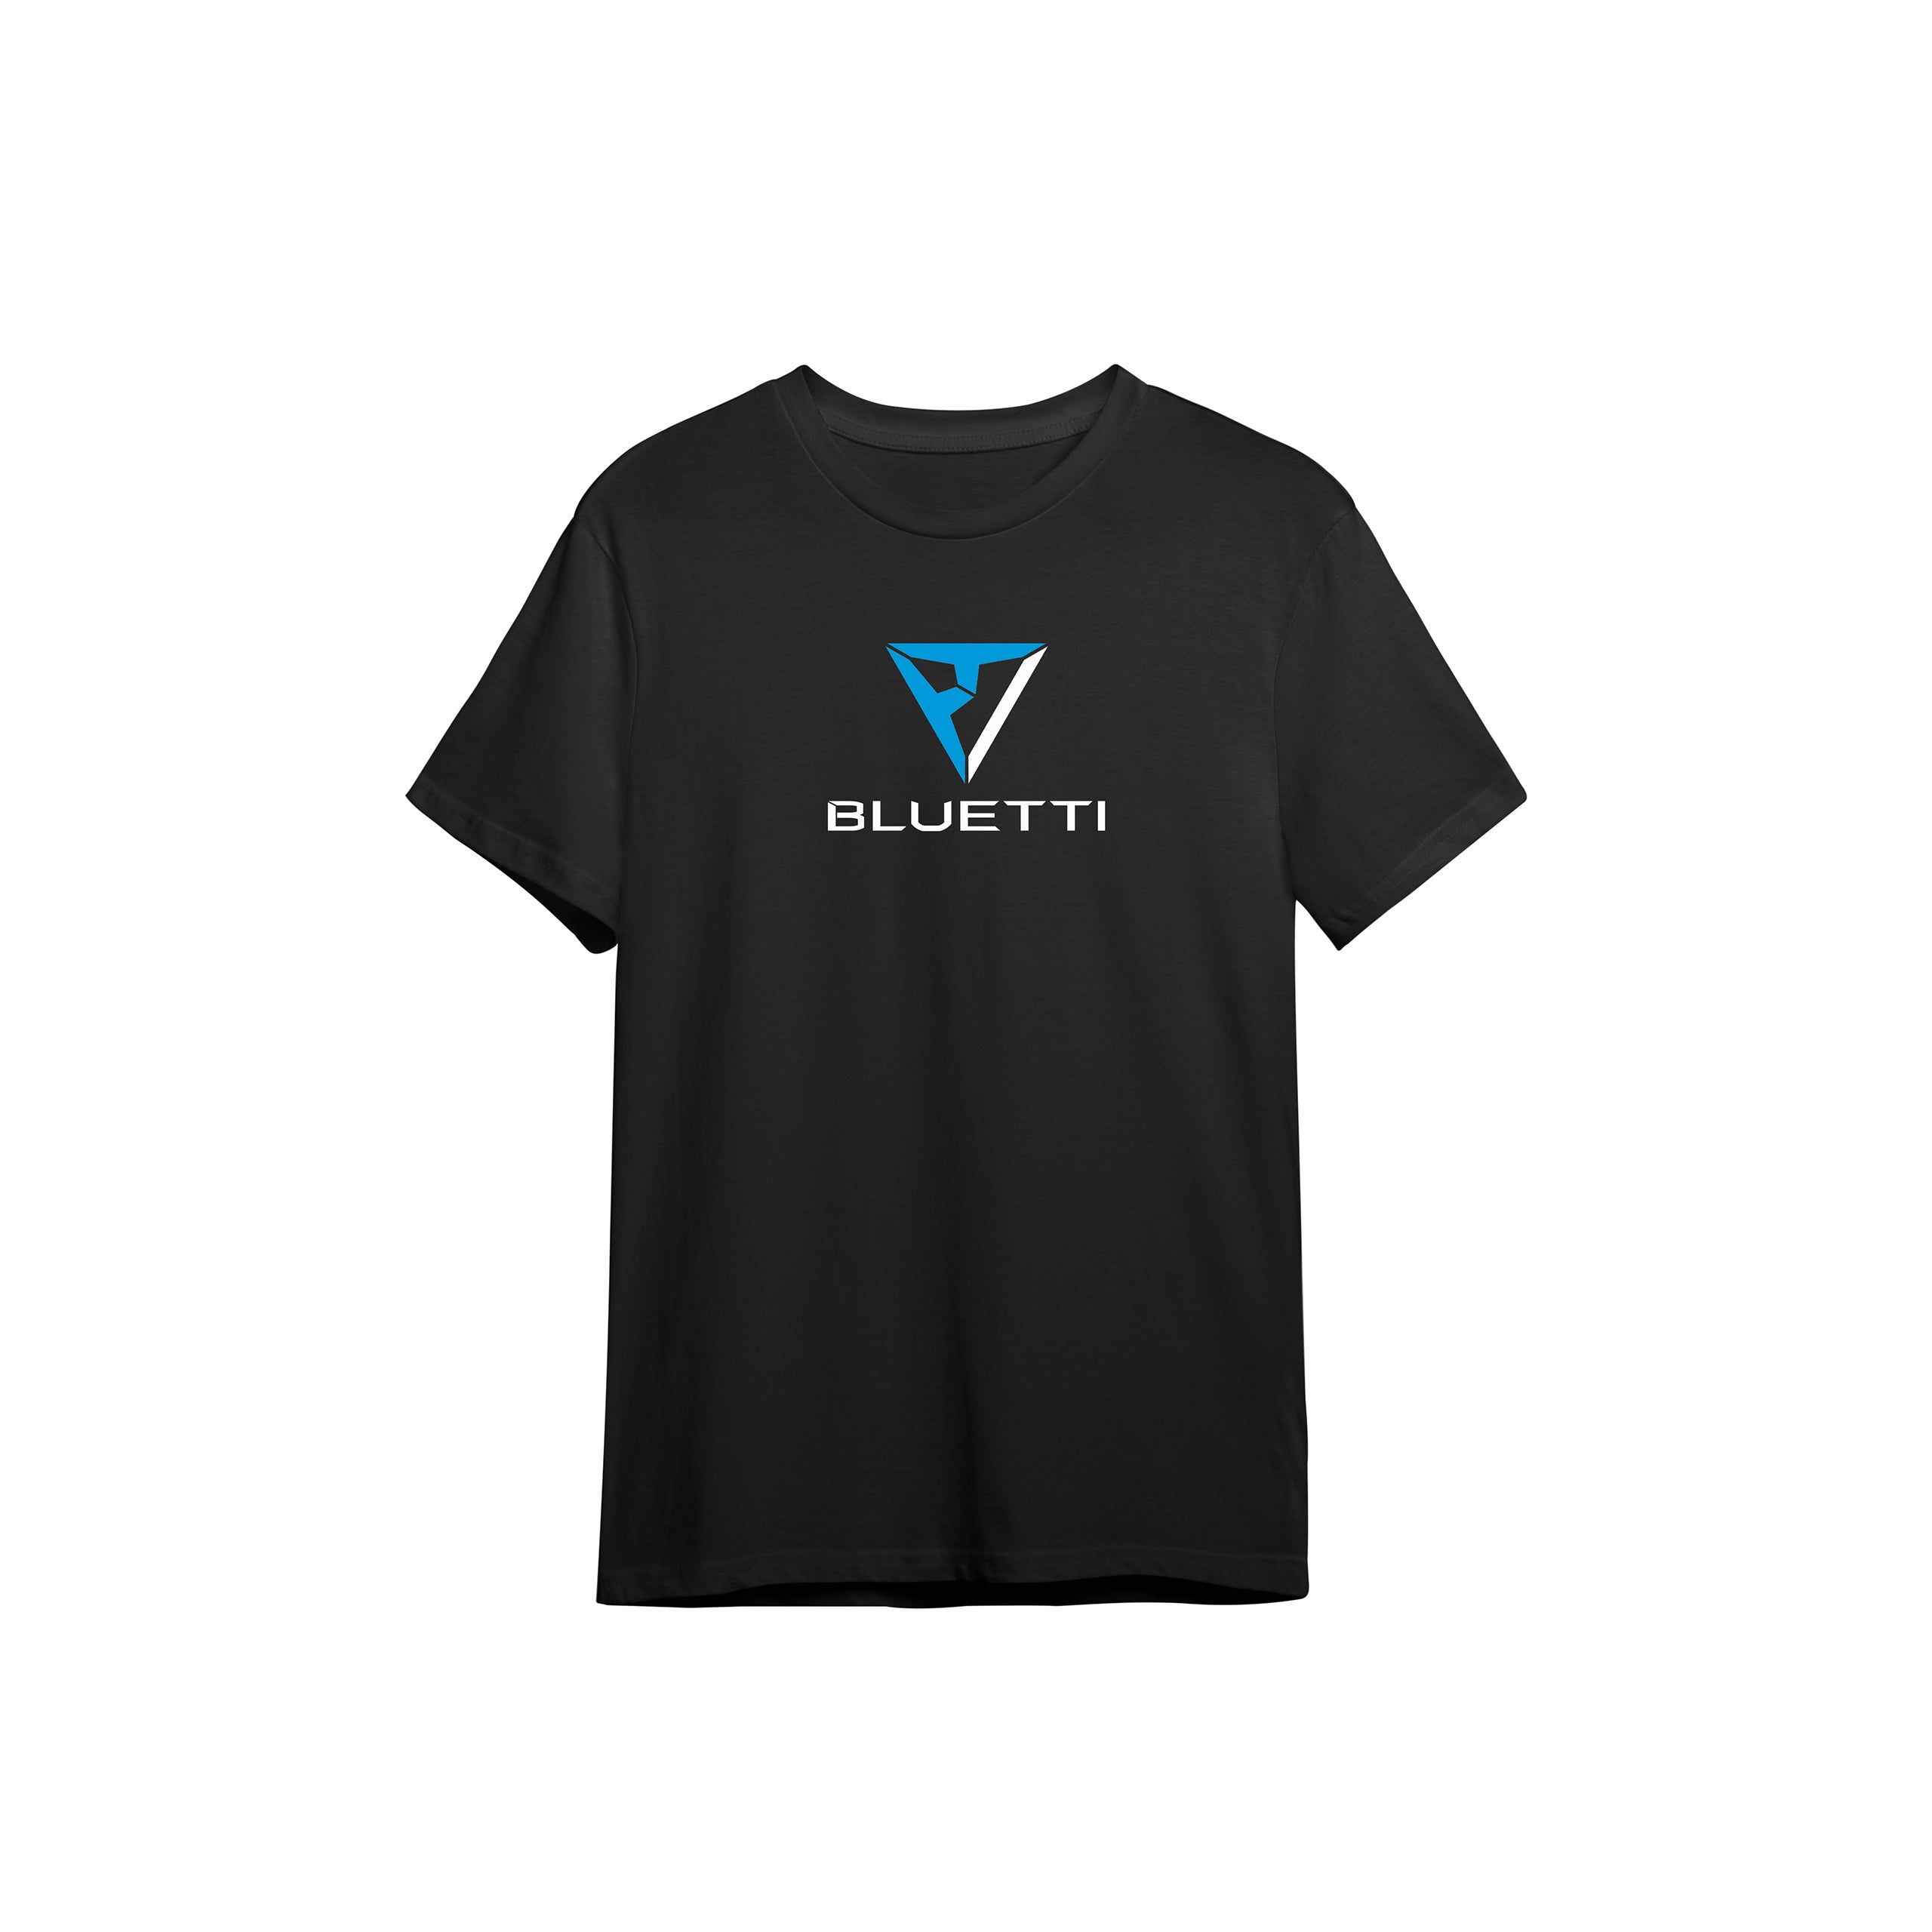 BLUETTI T-shirt, 4XL / Black / Adult